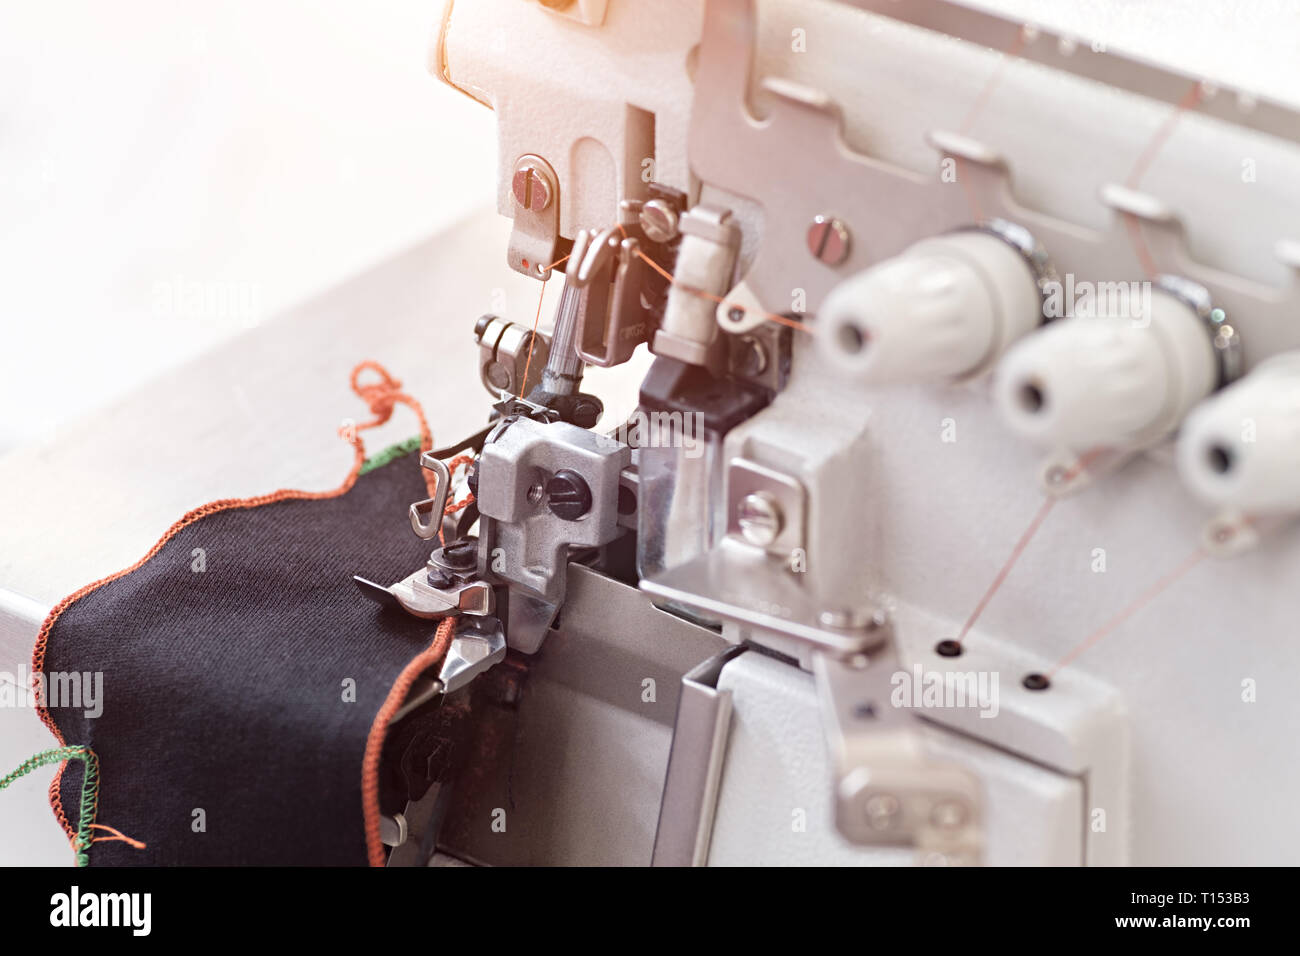 La tecnologia di fabbricazione artigianale, concetto. close up dei dettagli più importanti in macchina da cucire Foto Stock